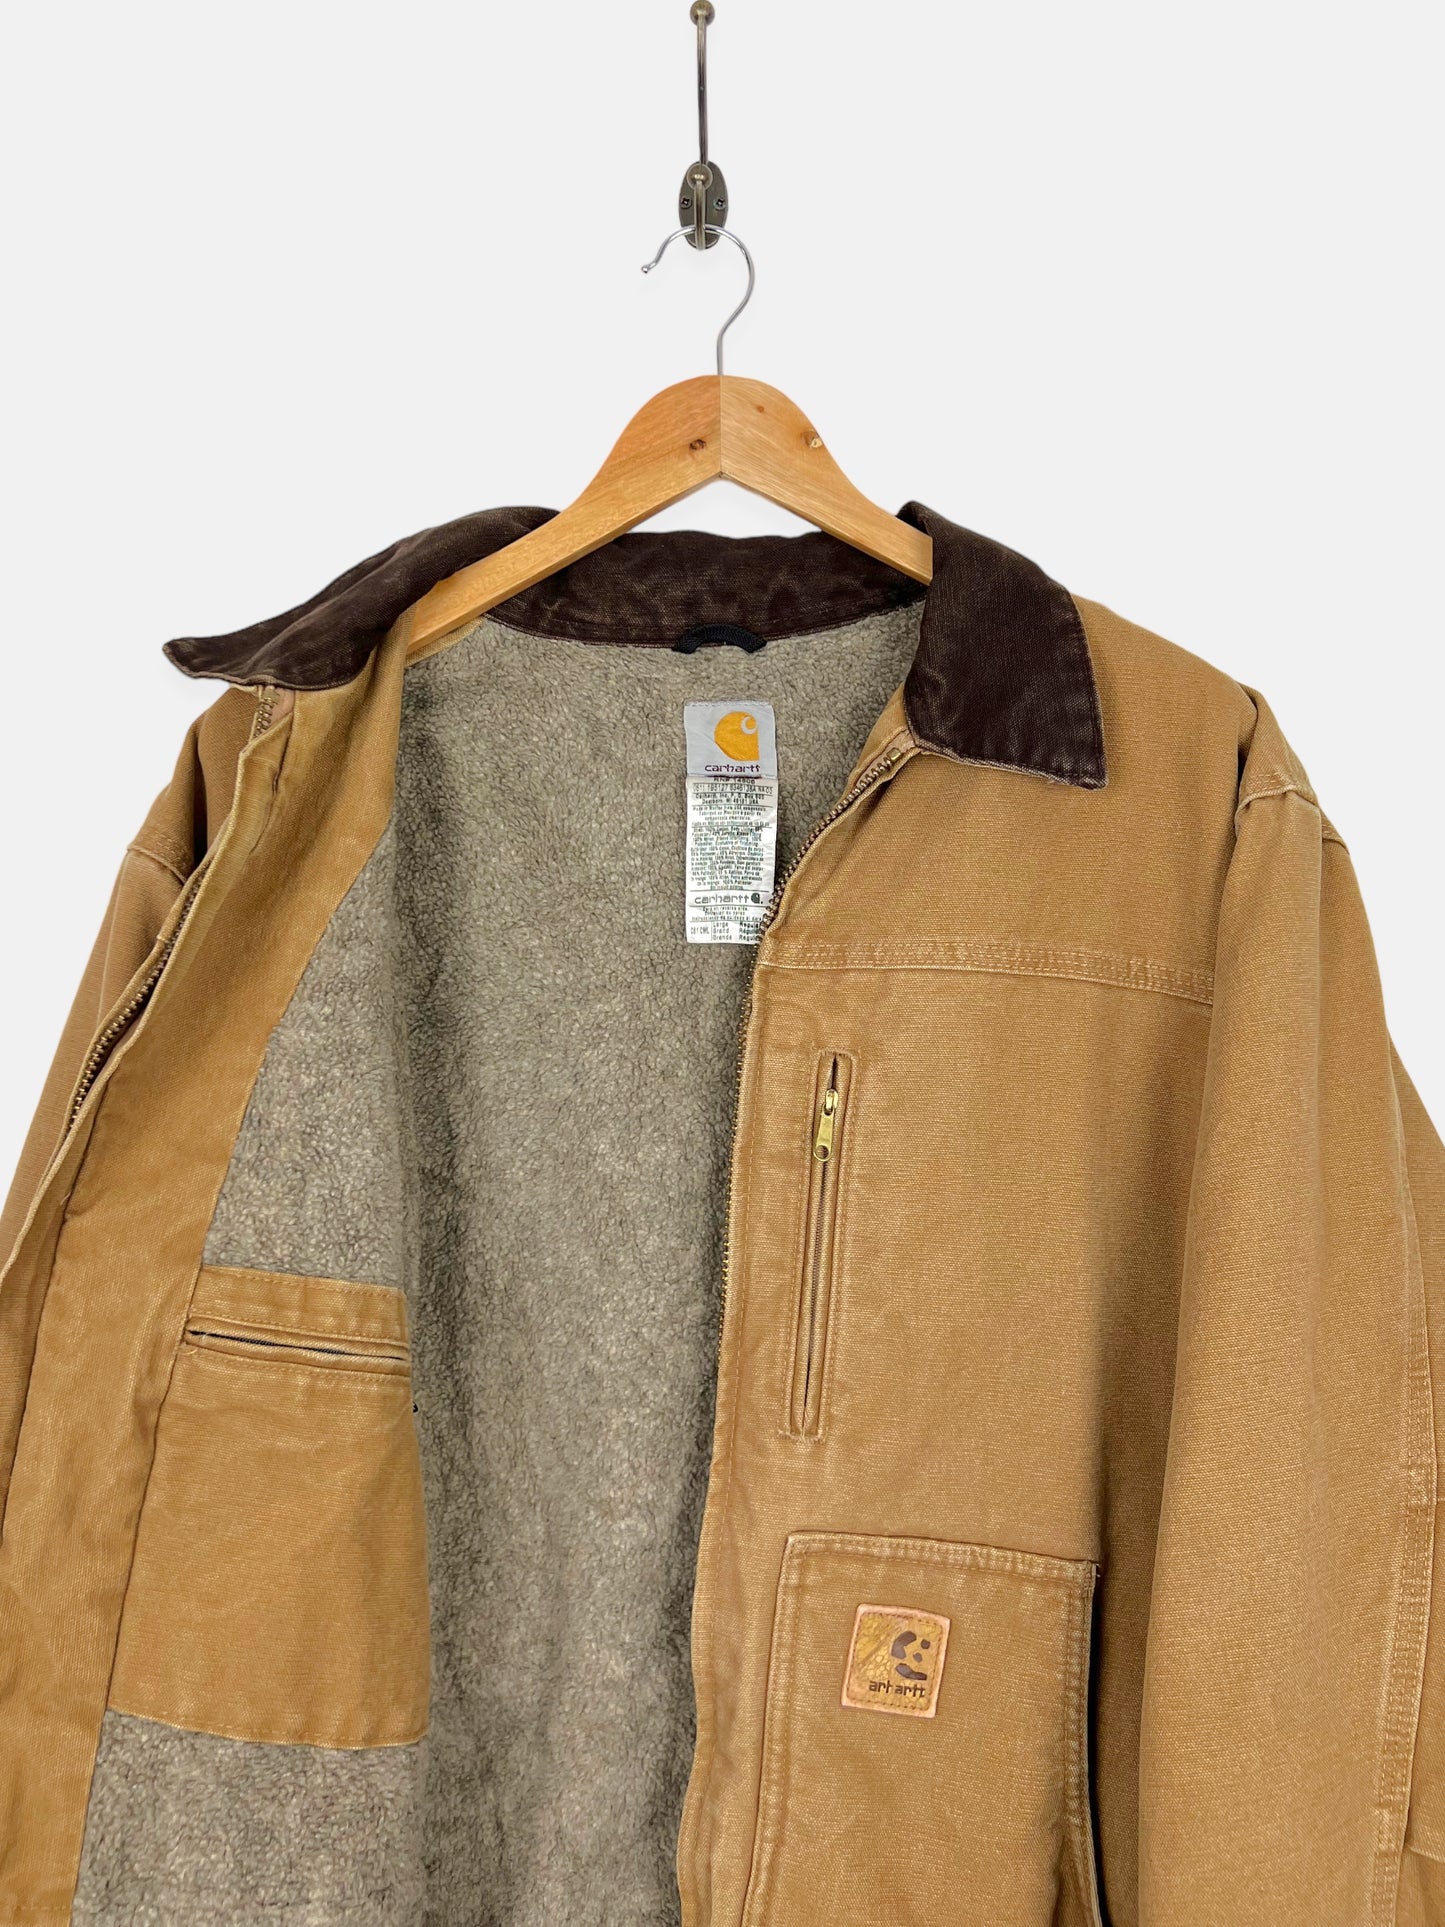 90's Carhartt Heavy Duty Sherpa Lined Vintage Jacket Size XL